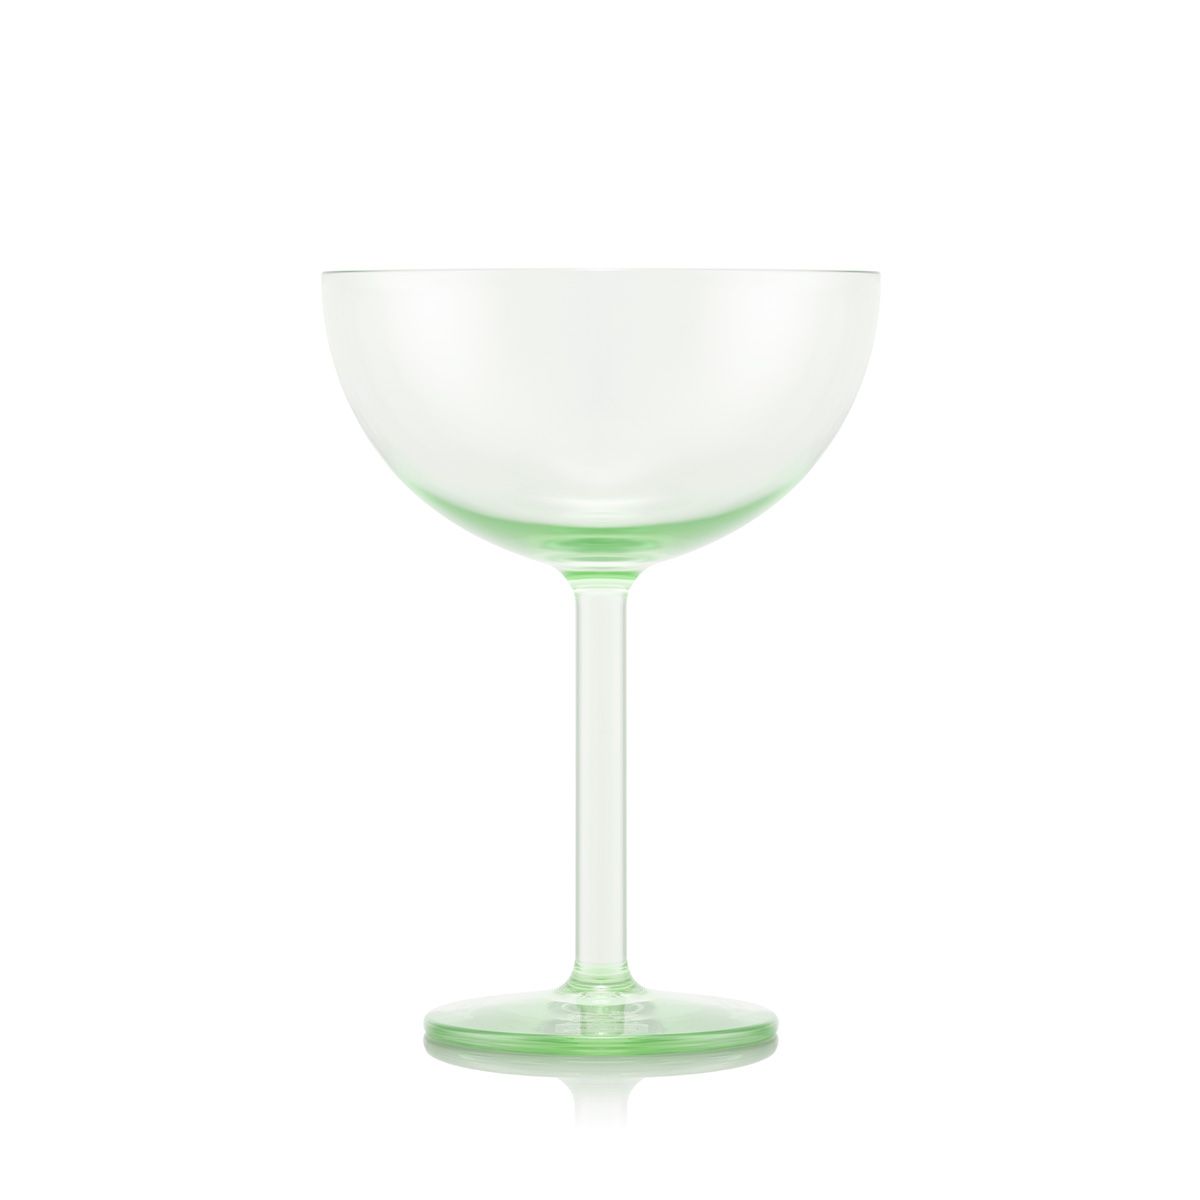 Bodum Oktett Champagne Coupe Glasses 4 stk. 0,28 L, pistache